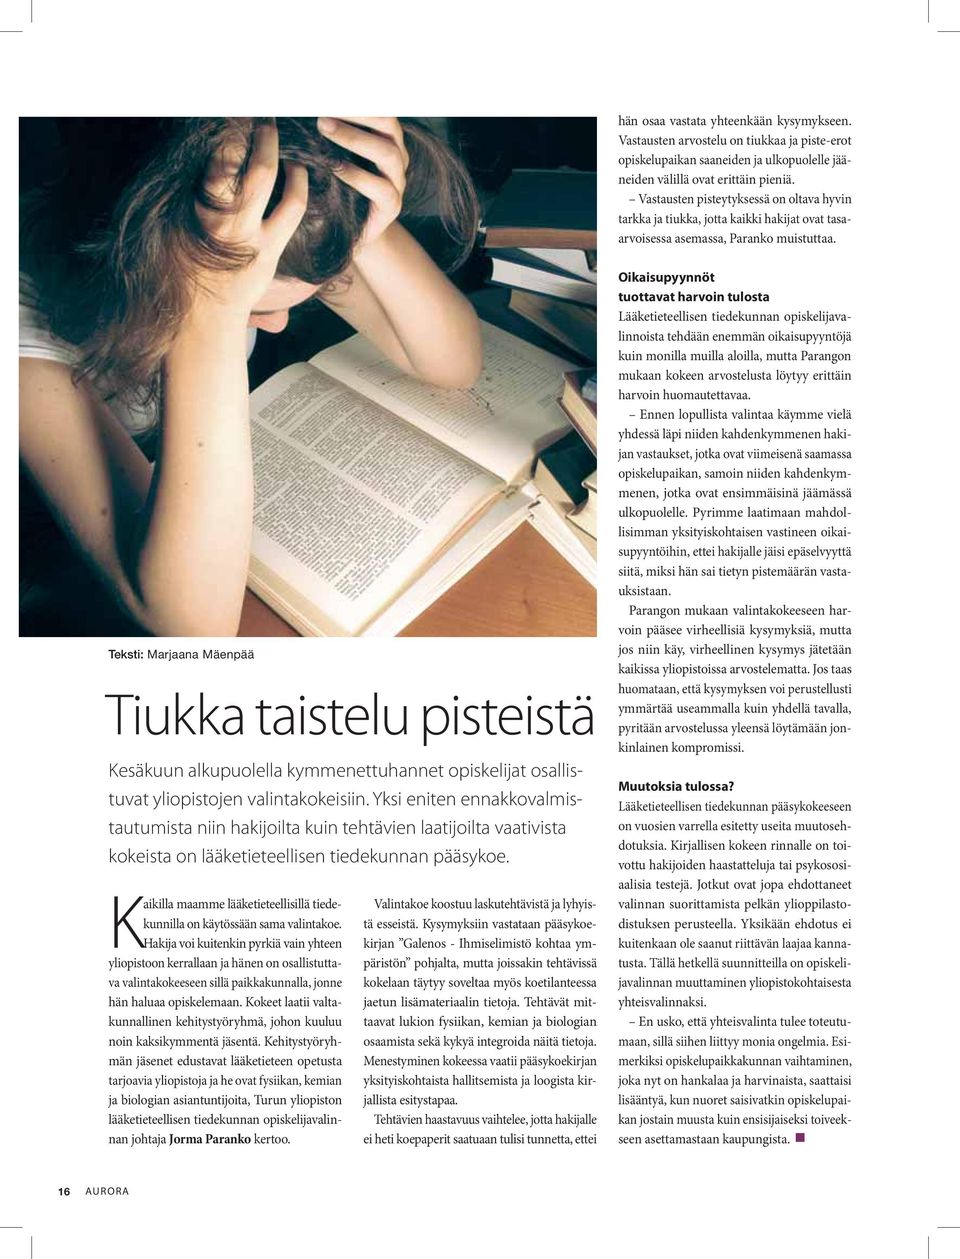 Teksti: Marjaana Mäenpää Tiukka taistelu pisteistä Kesäkuun alkupuolella kymmenettuhannet opiskelijat osallistuvat yliopistojen valintakokeisiin.